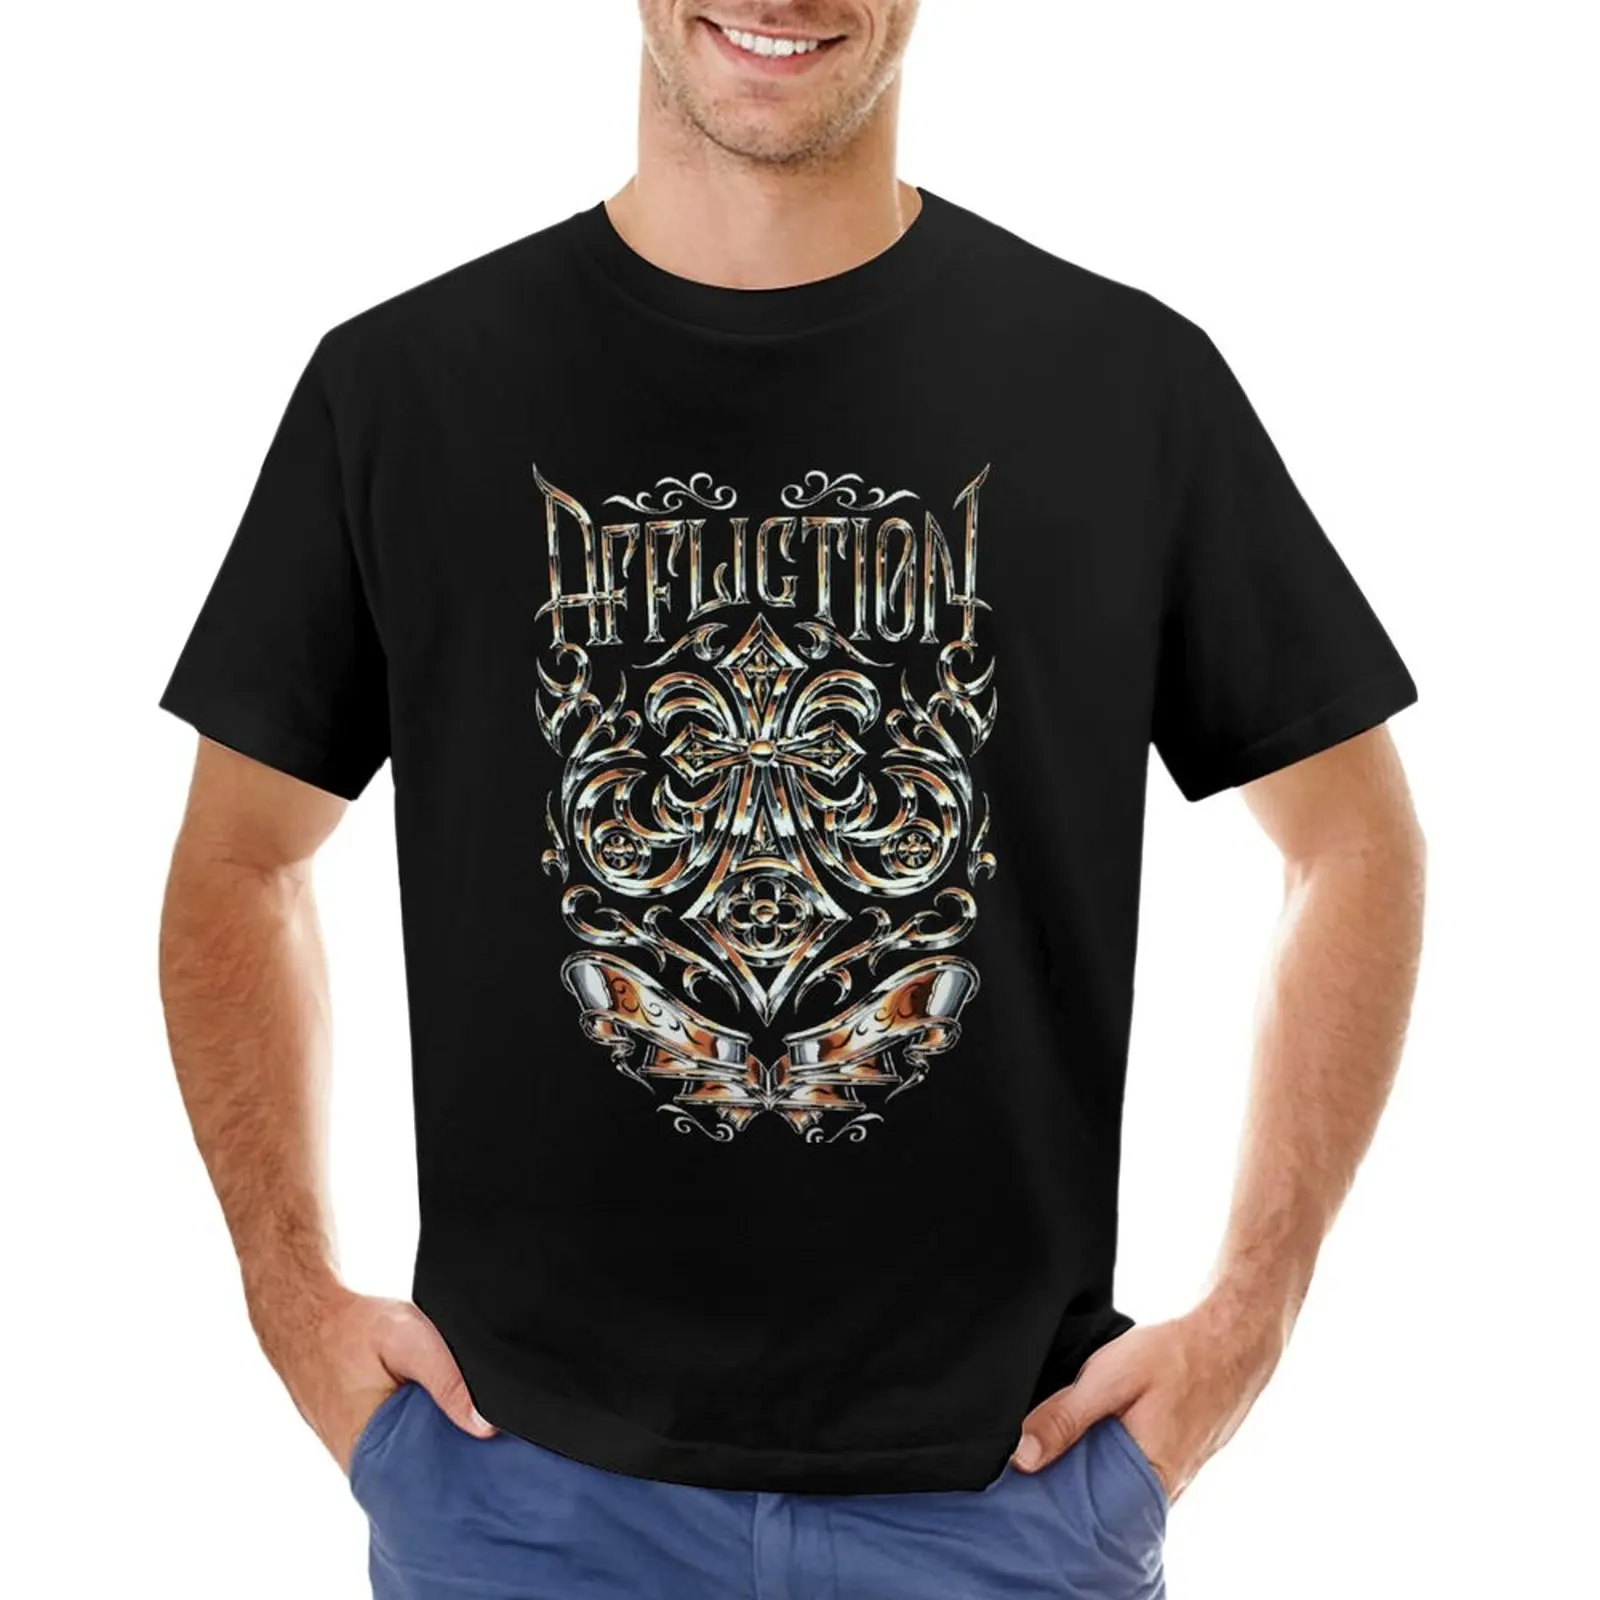 Футболка affliction, черная футболка, футболка на заказ, аниме, облегающие футболки для мужчин